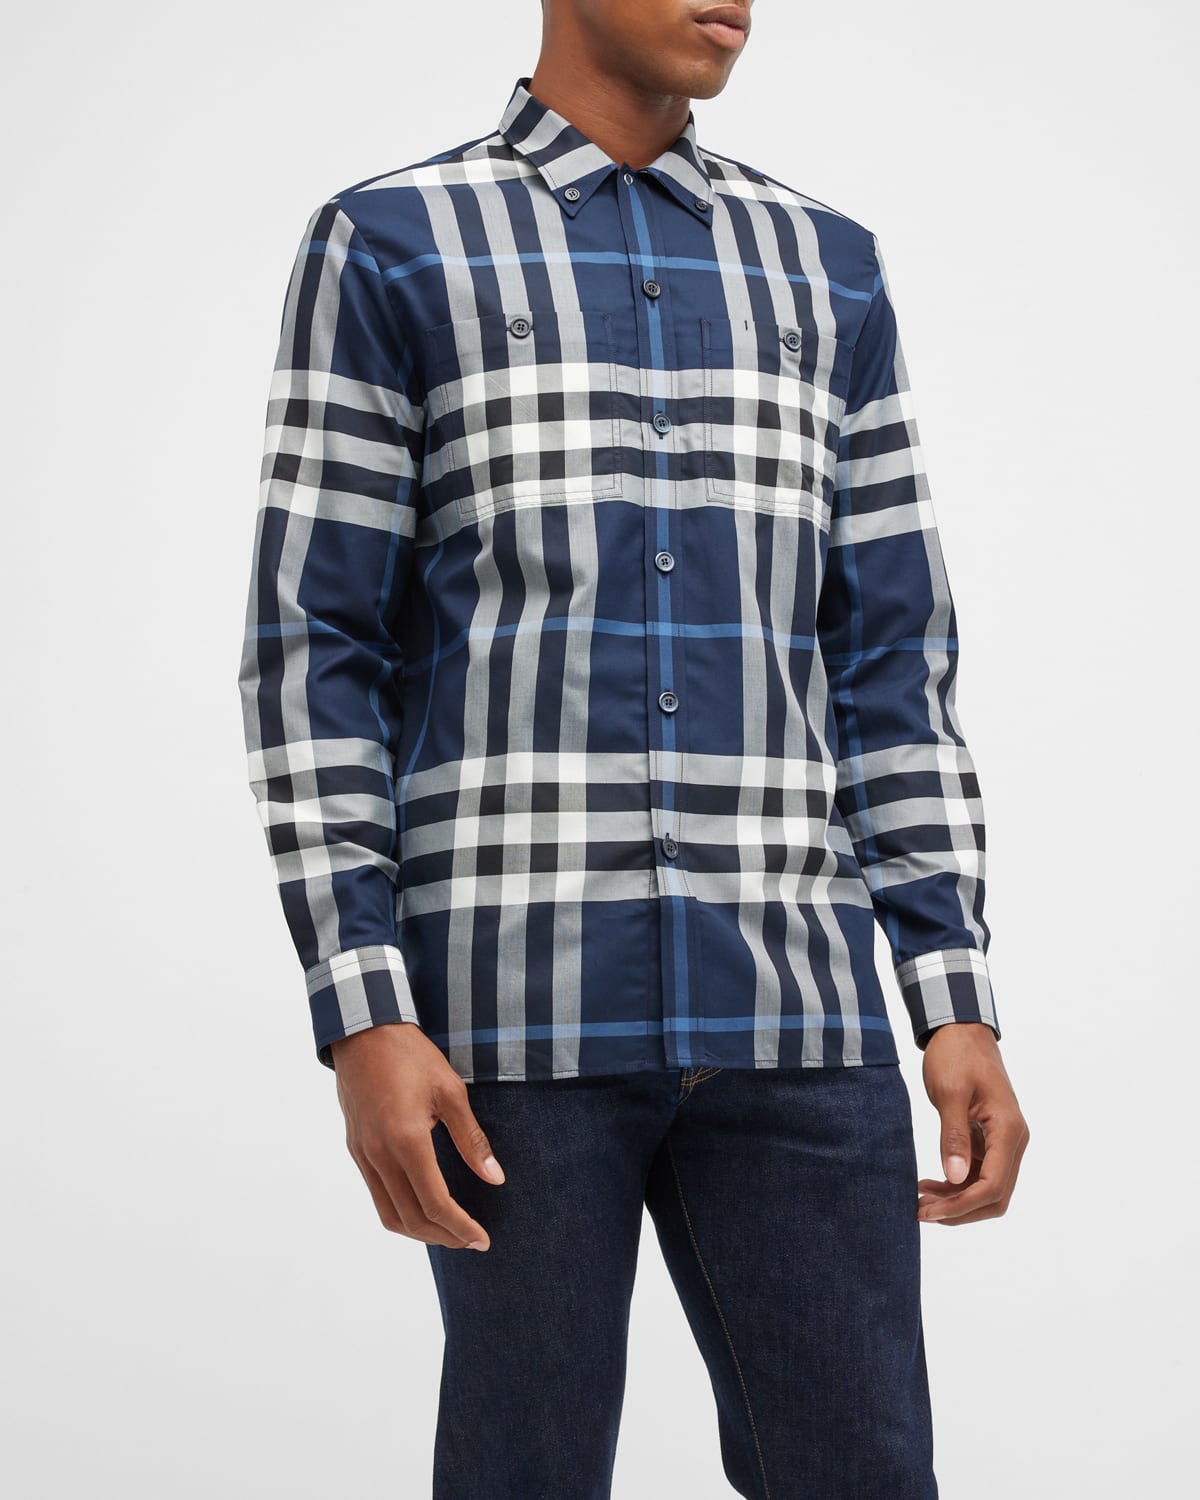 Burberry Blue Check Shirt | Neiman Marcus